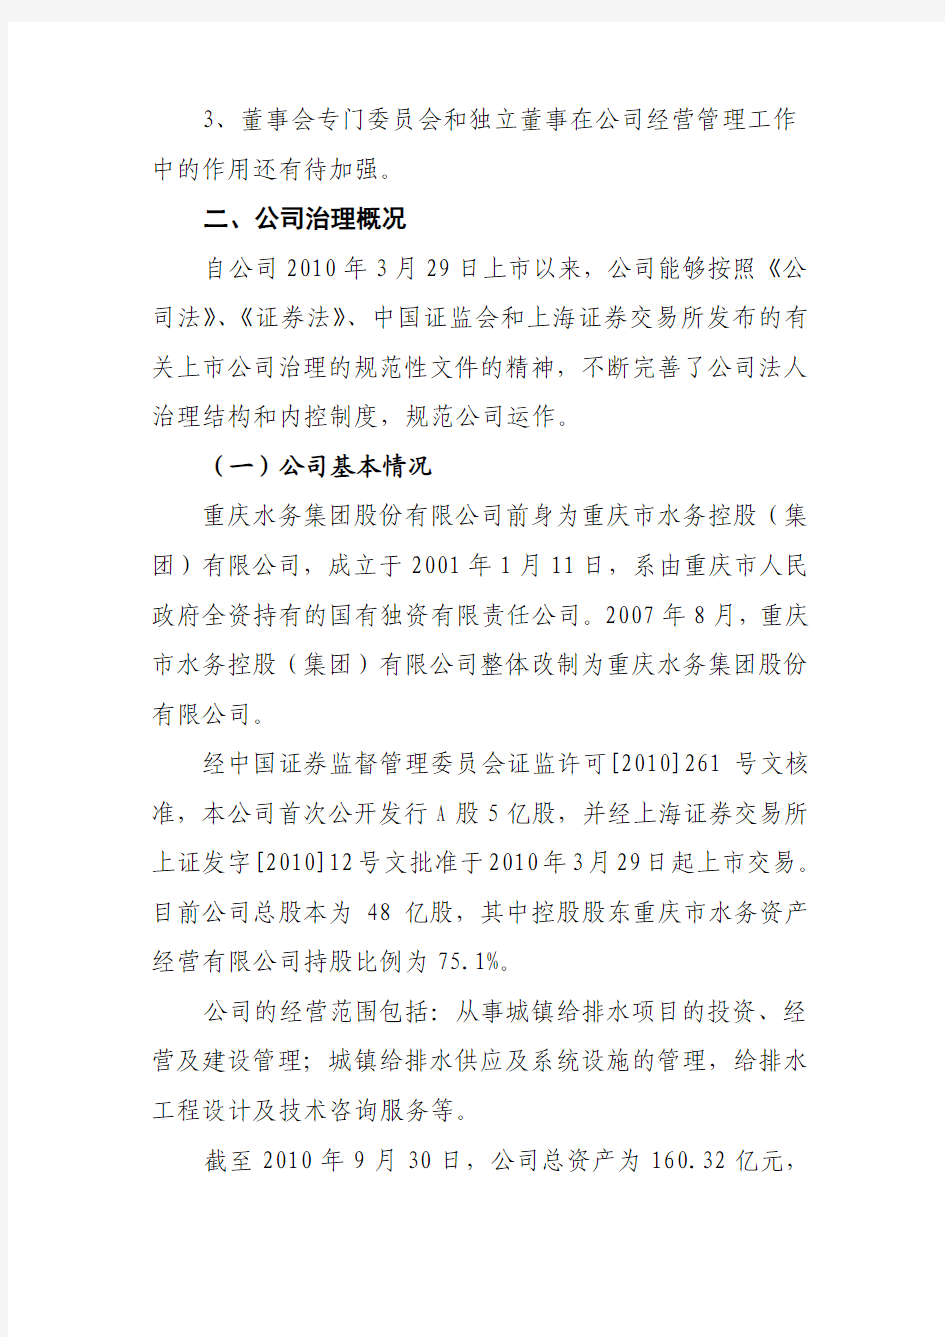 重庆水务集团股份有限公司关于 公司治理专项活动的自查报告和整改